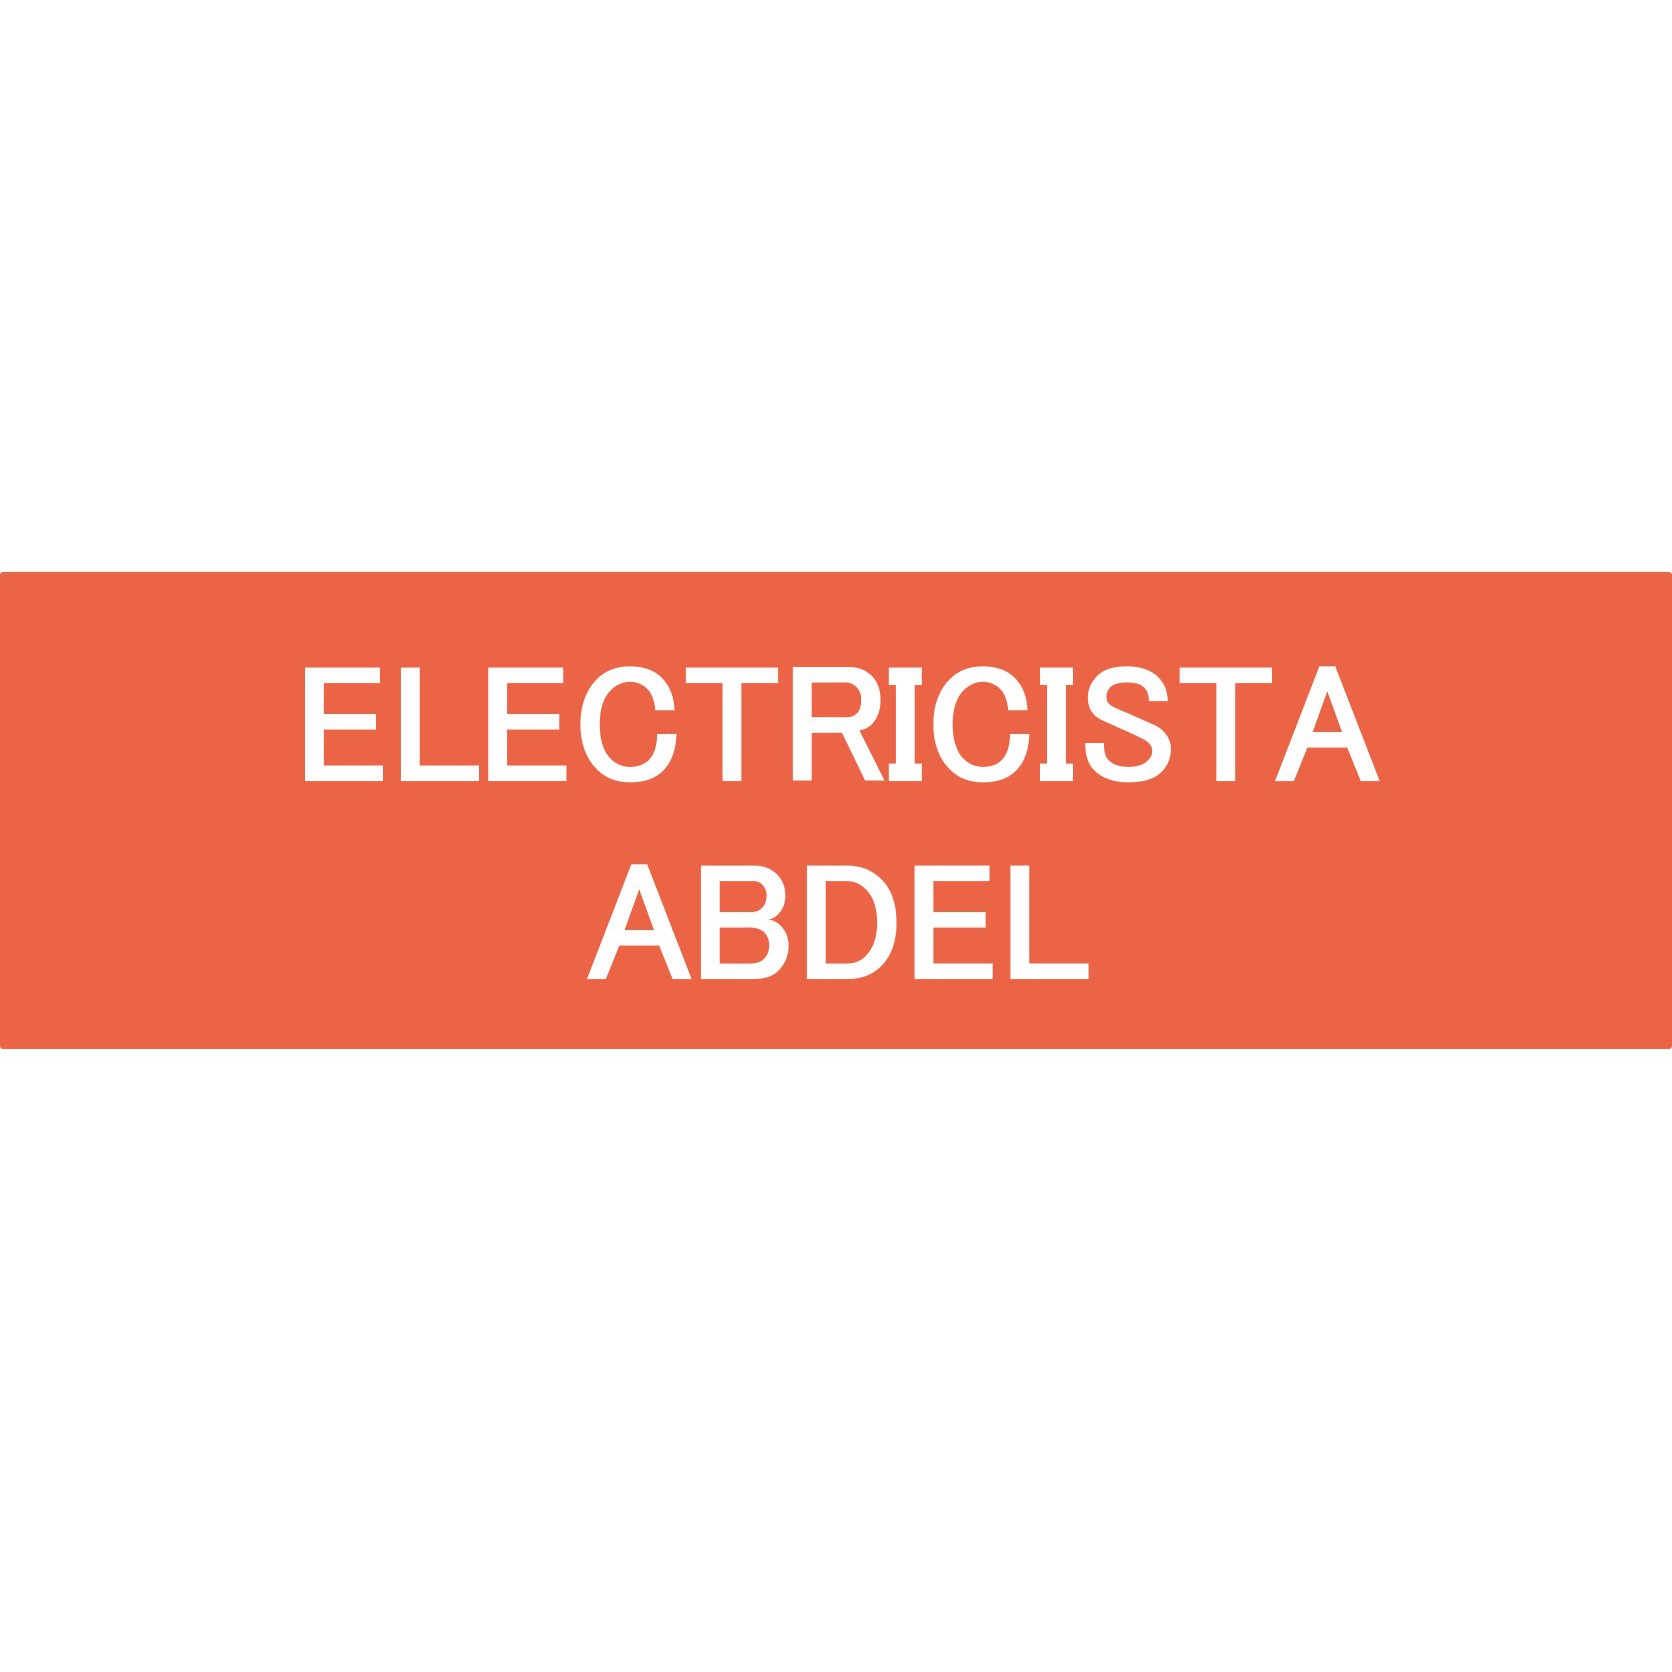 Electricista Abdel Navas del Rey